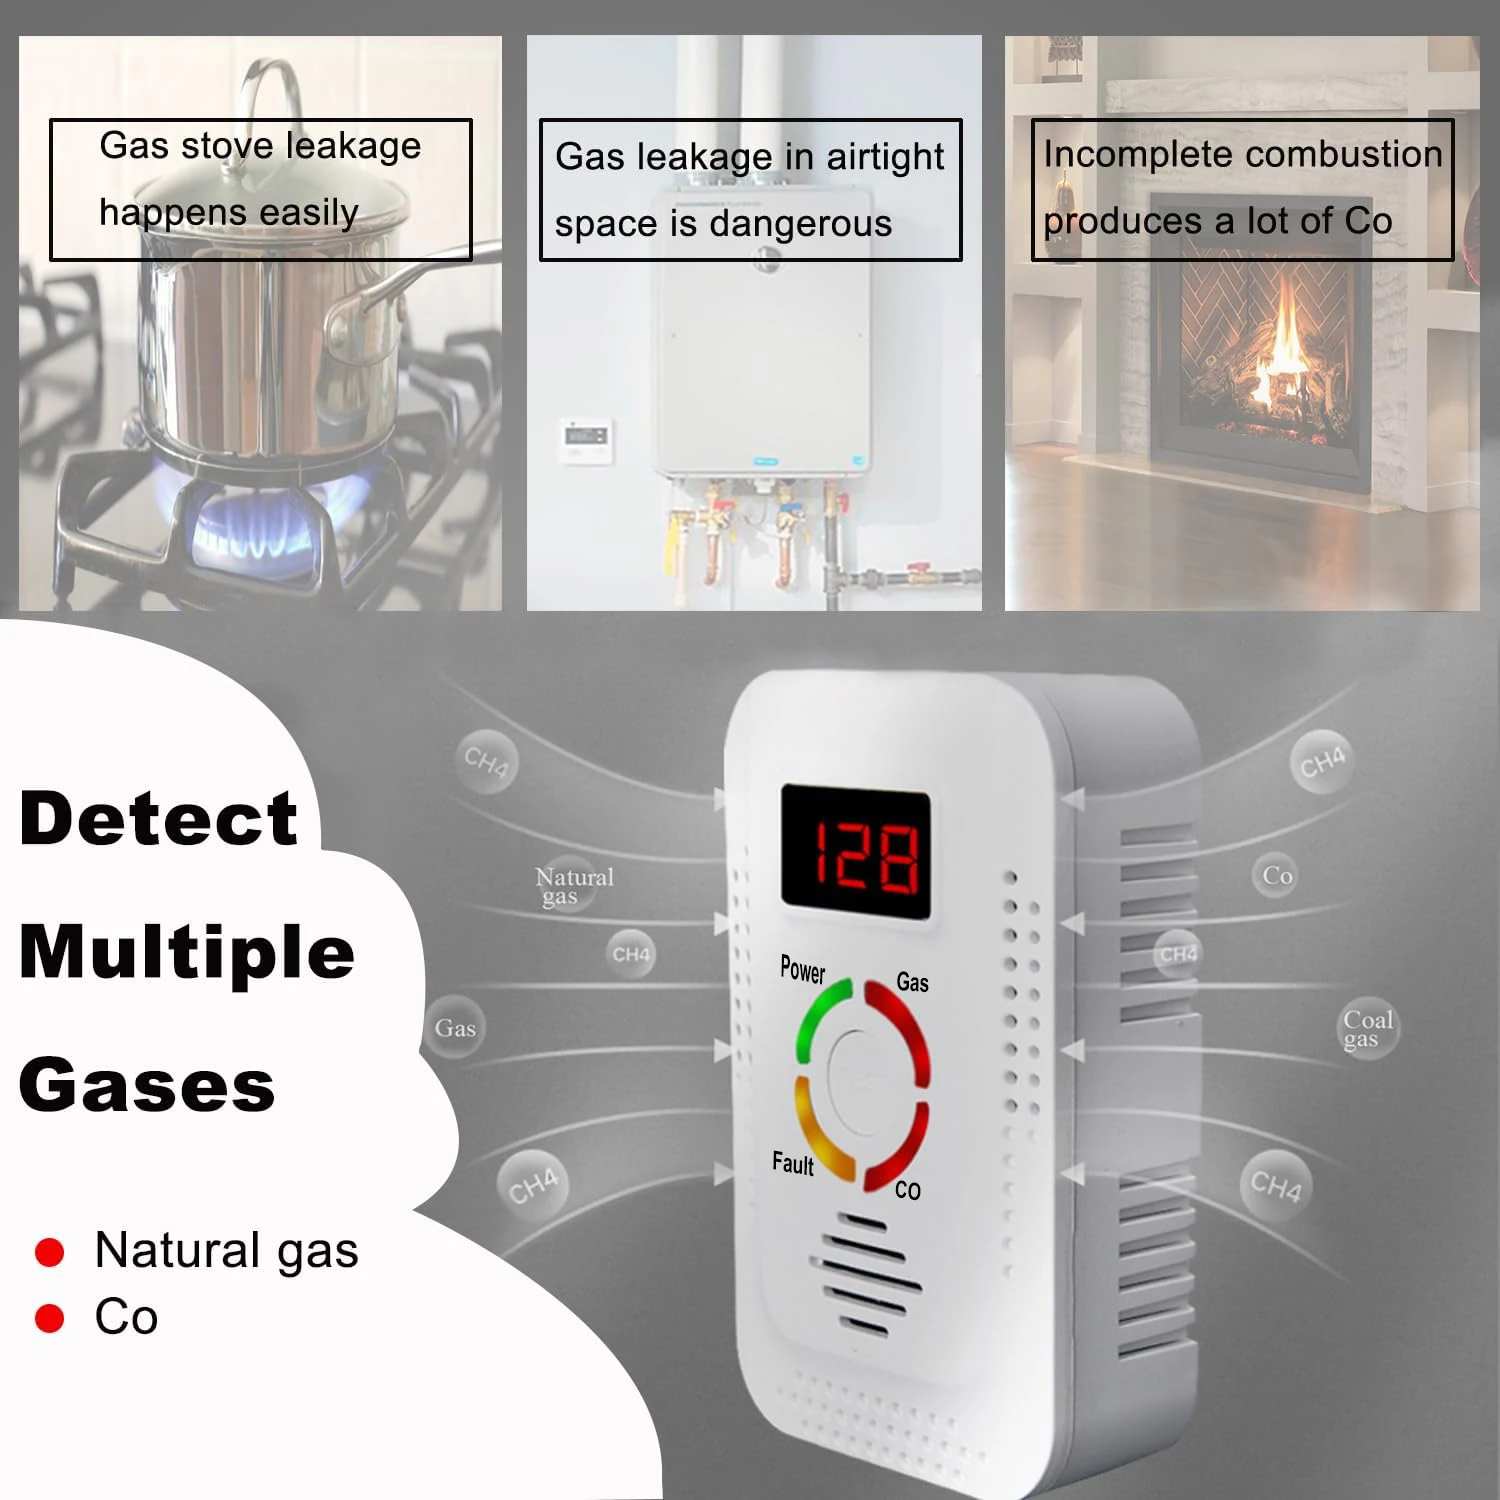 GECAGAMA-Detector de Gas Natural y Gas Licuado